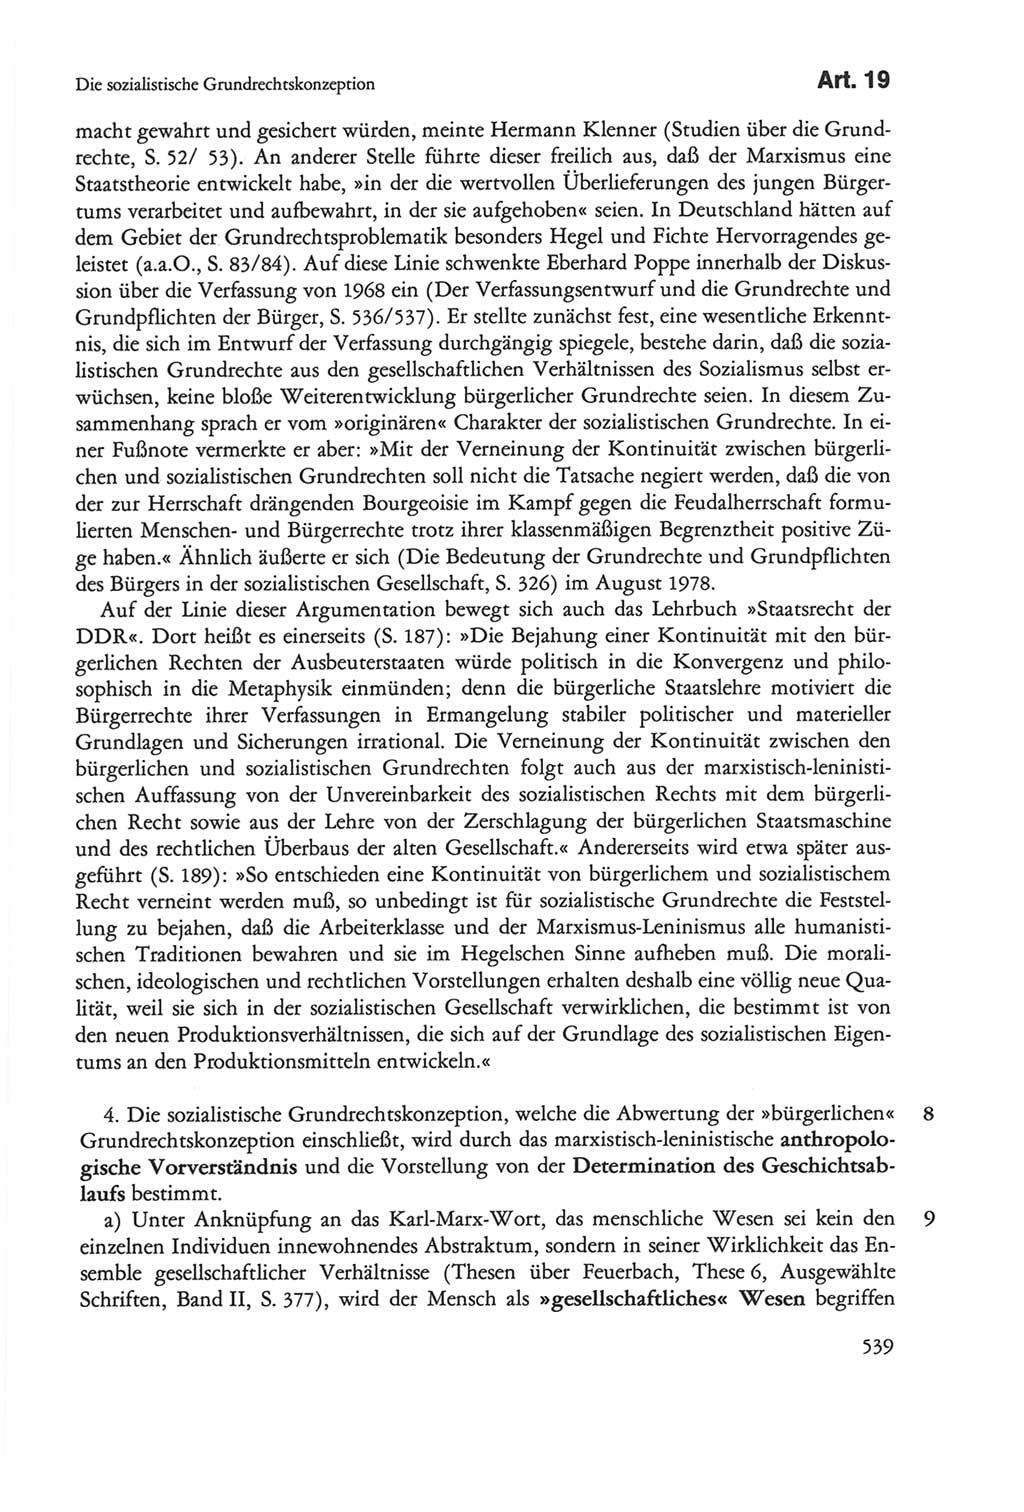 Die sozialistische Verfassung der Deutschen Demokratischen Republik (DDR), Kommentar mit einem Nachtrag 1997, Seite 539 (Soz. Verf. DDR Komm. Nachtr. 1997, S. 539)